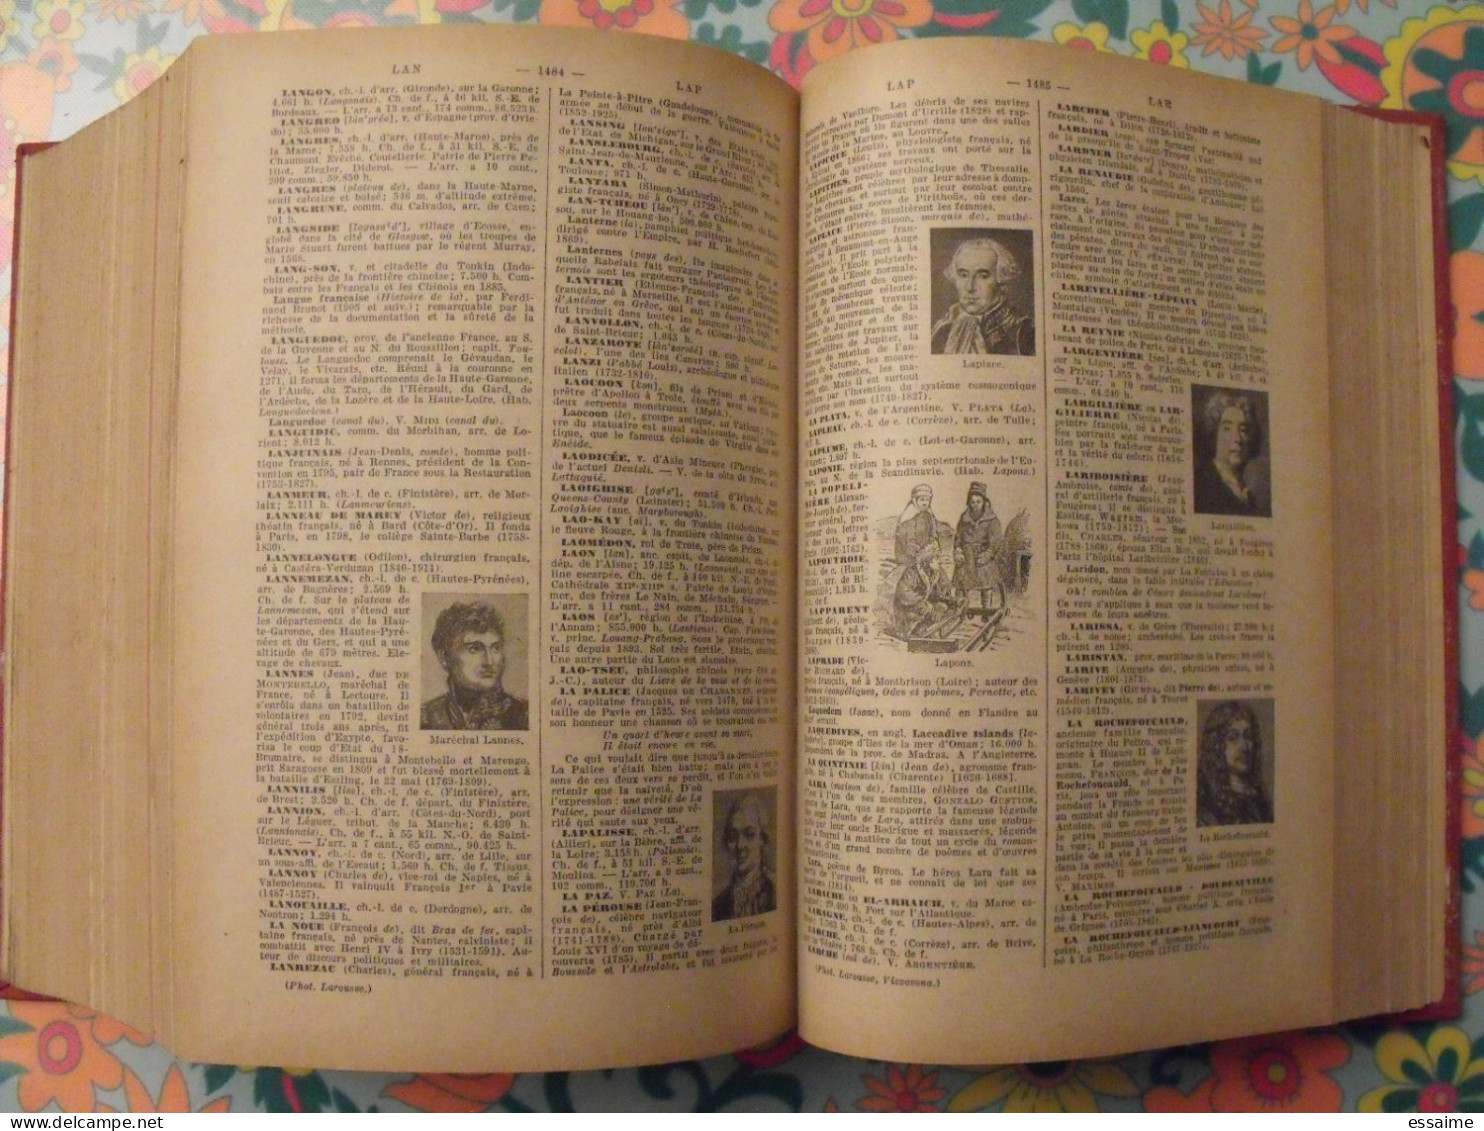 Dictionnaire Nouveau Petit Larousse illustré. Claude et Paul Augé. 1940